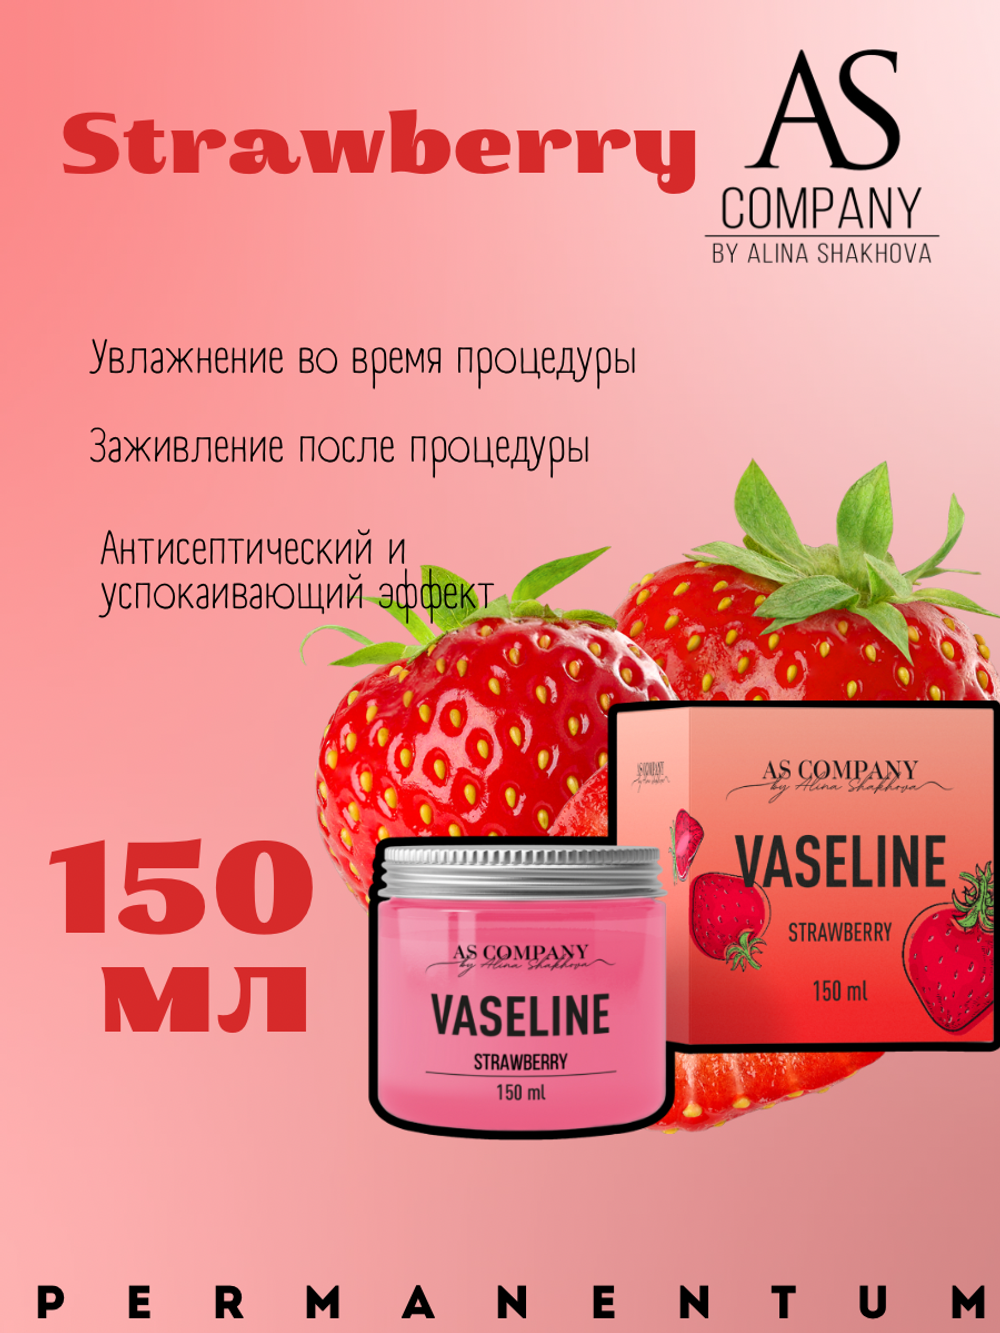 Вазелин ароматизированный AS Company 150 мл.